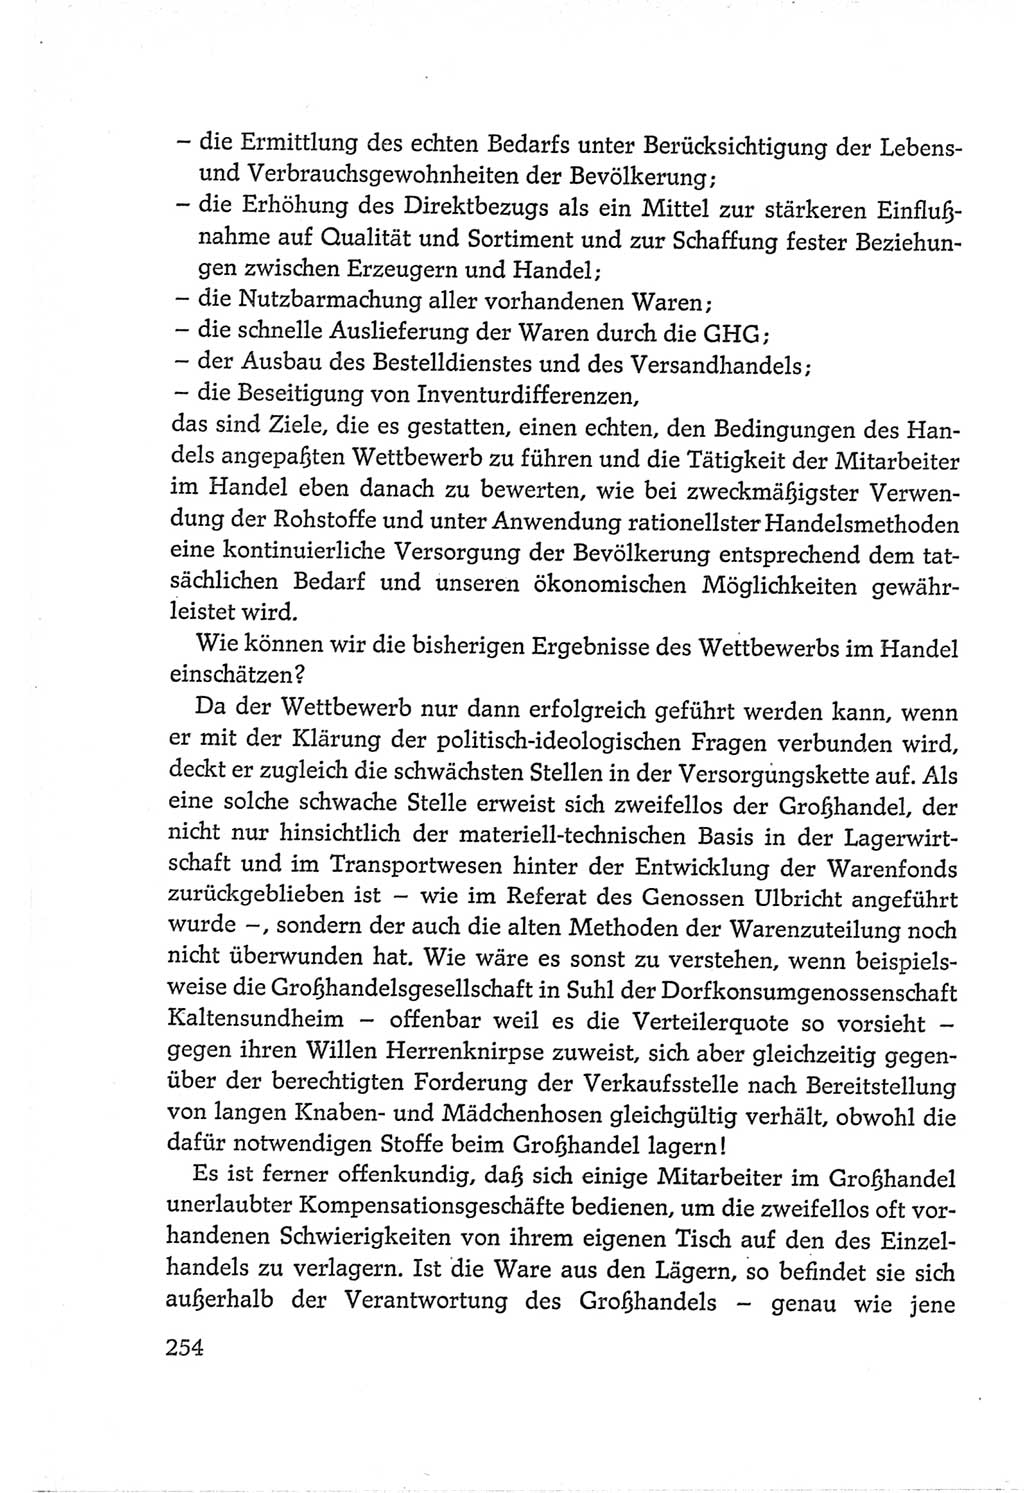 Protokoll der Verhandlungen des Ⅵ. Parteitages der Sozialistischen Einheitspartei Deutschlands (SED) [Deutsche Demokratische Republik (DDR)] 1963, Band Ⅱ, Seite 254 (Prot. Verh. Ⅵ. PT SED DDR 1963, Bd. Ⅱ, S. 254)